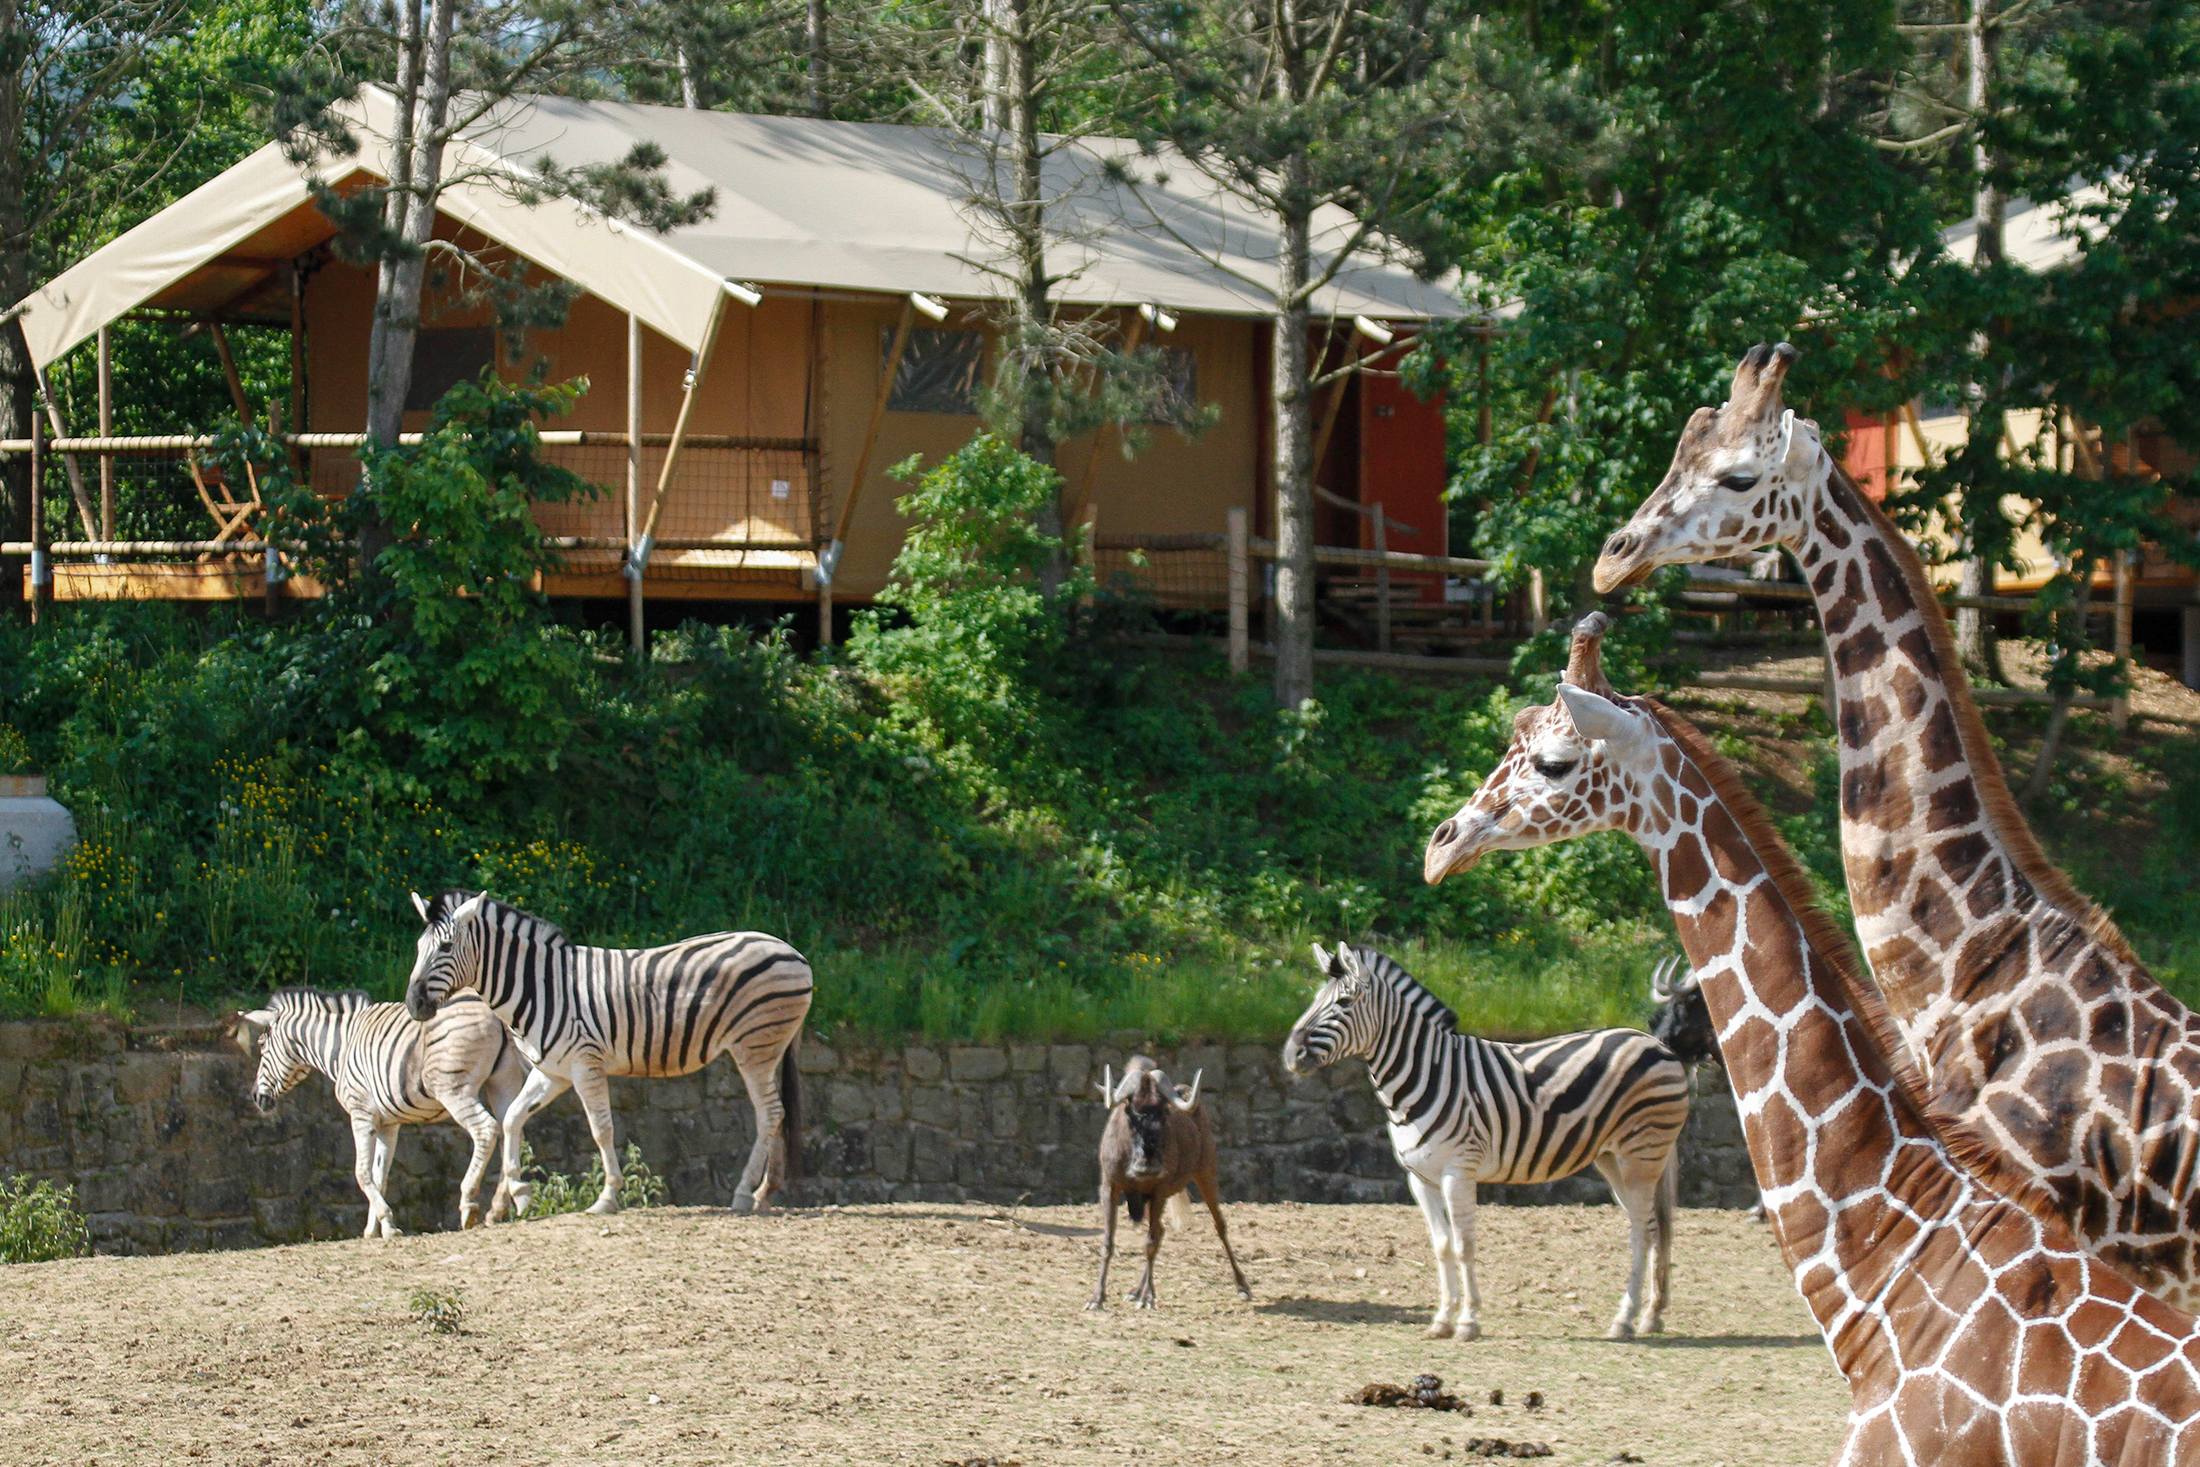 safari park dvur kralove hotel